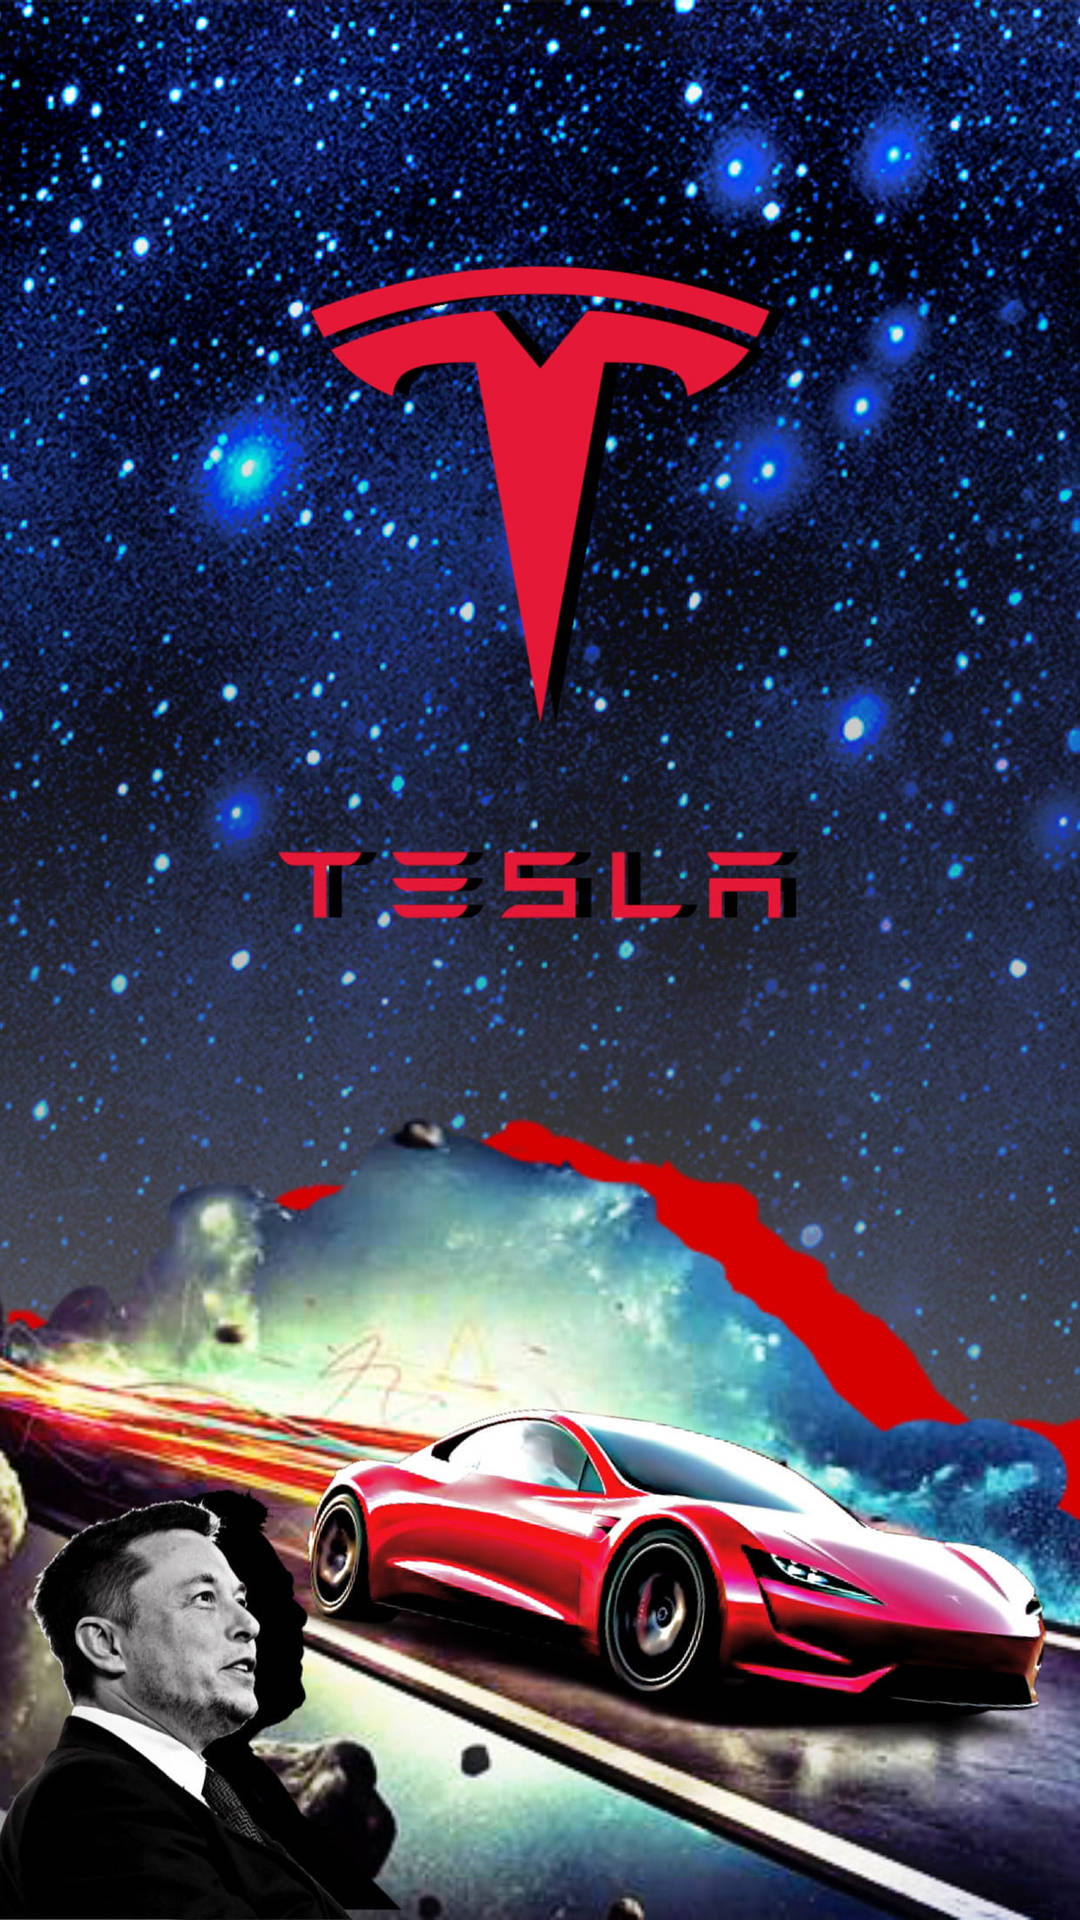 Elon Musk Tesla Car Fan Art